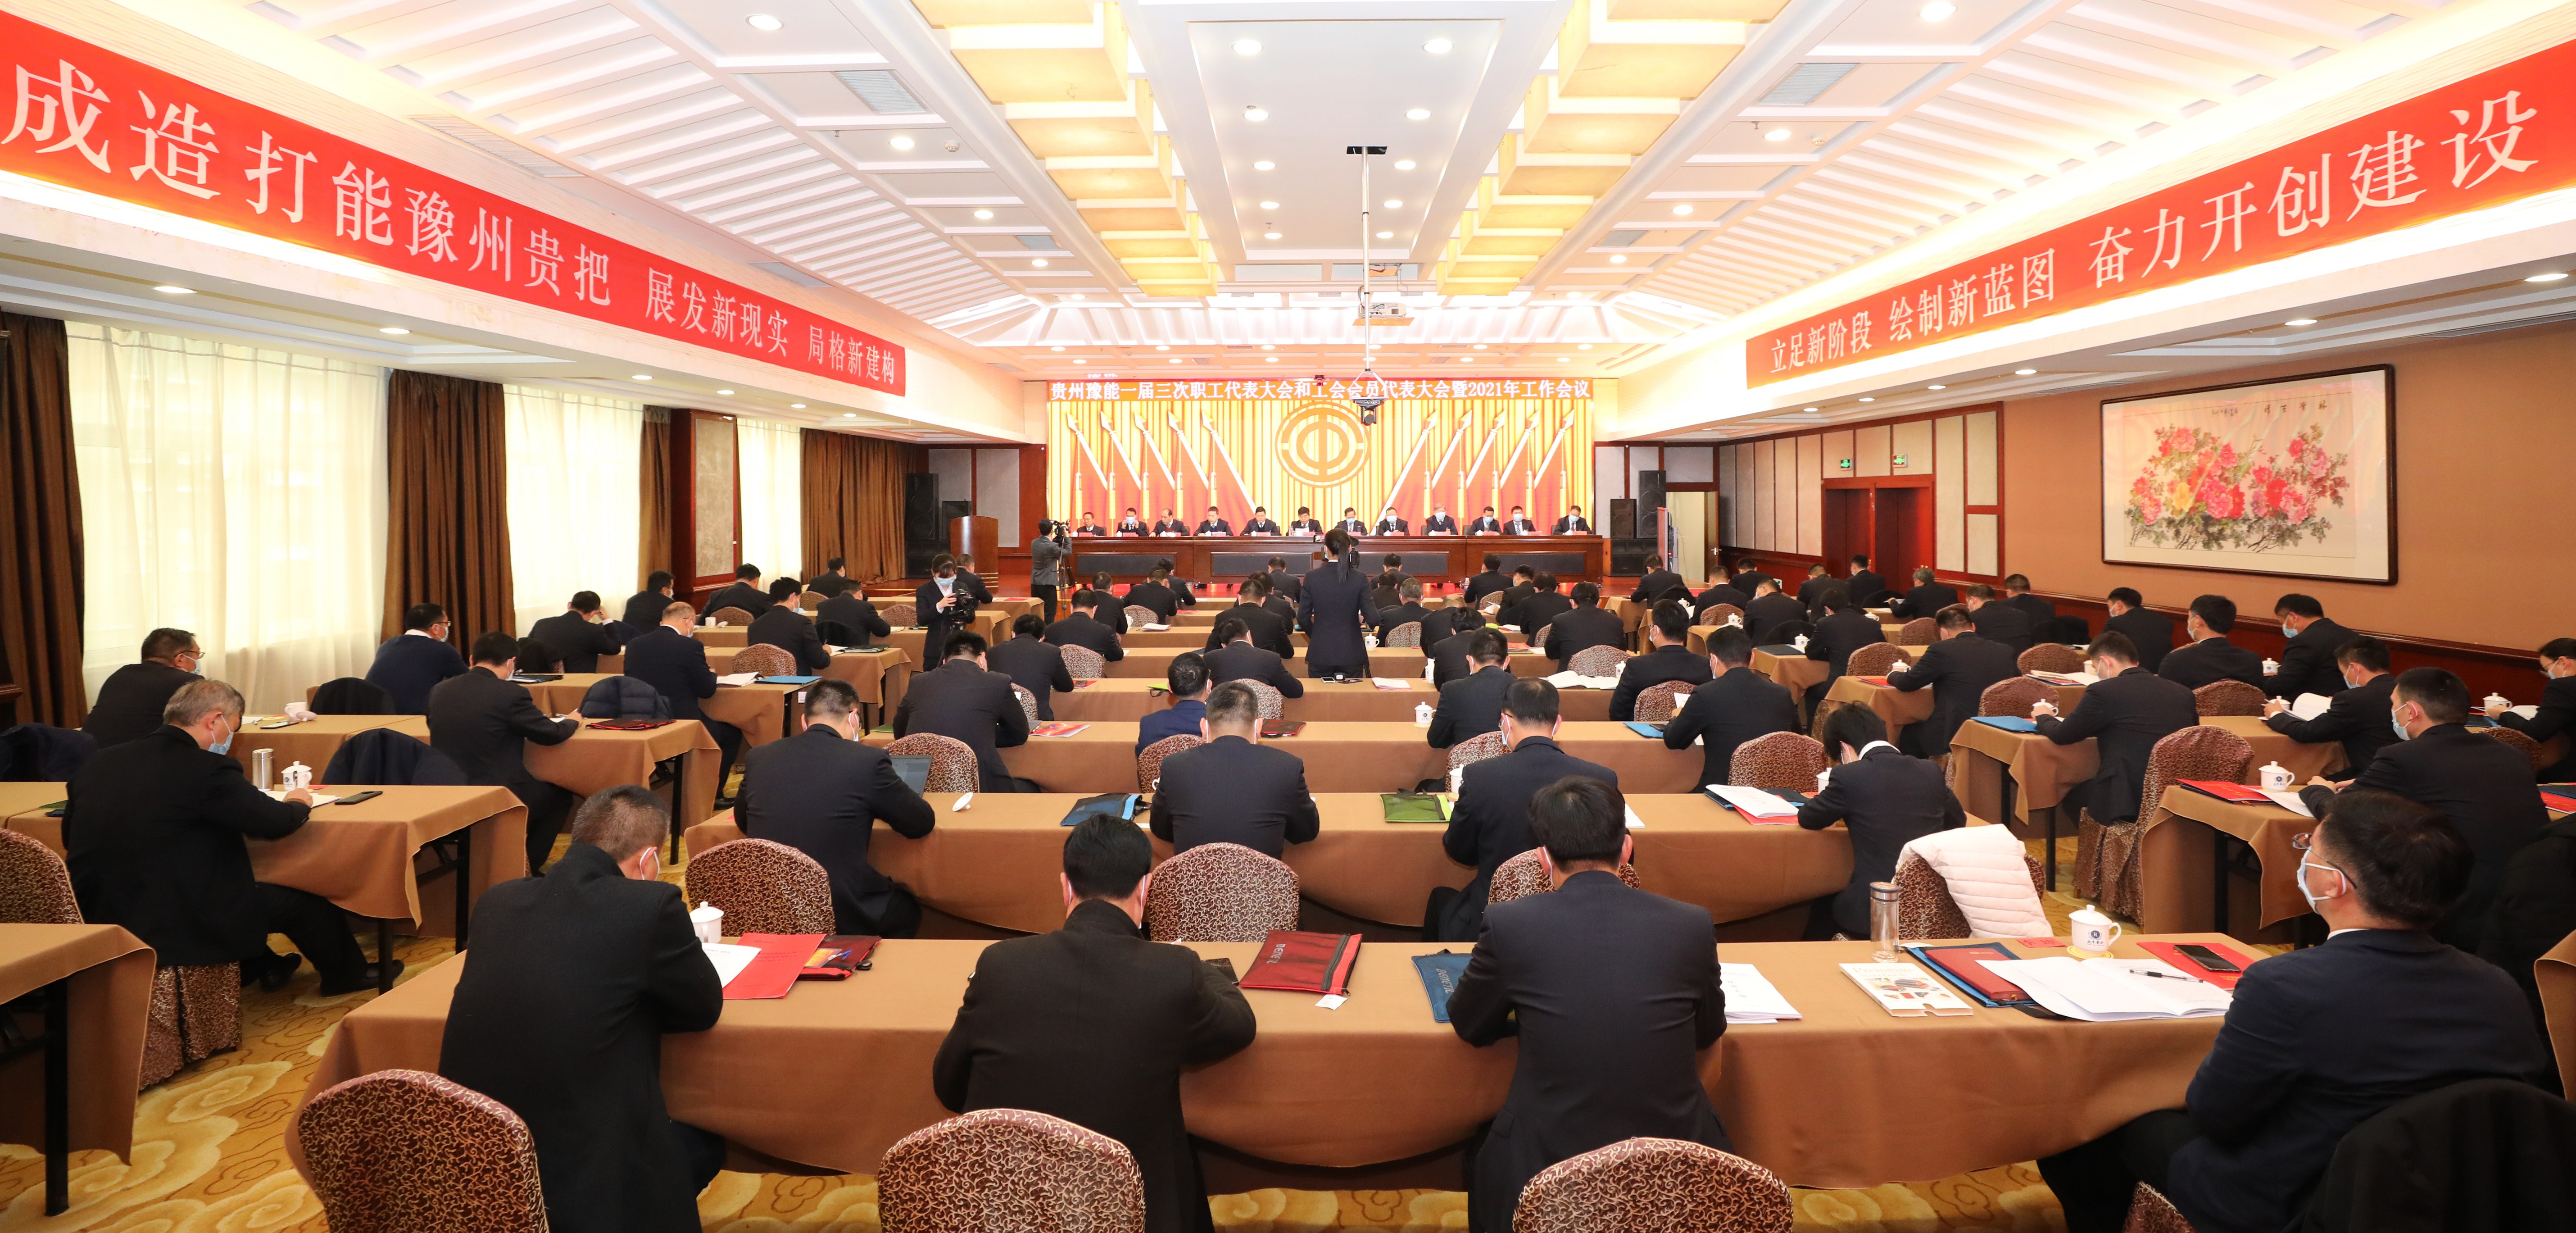 贵州豫能一届三次职工代表大会和工会会员代表大会暨2021年工作会议隆重召开